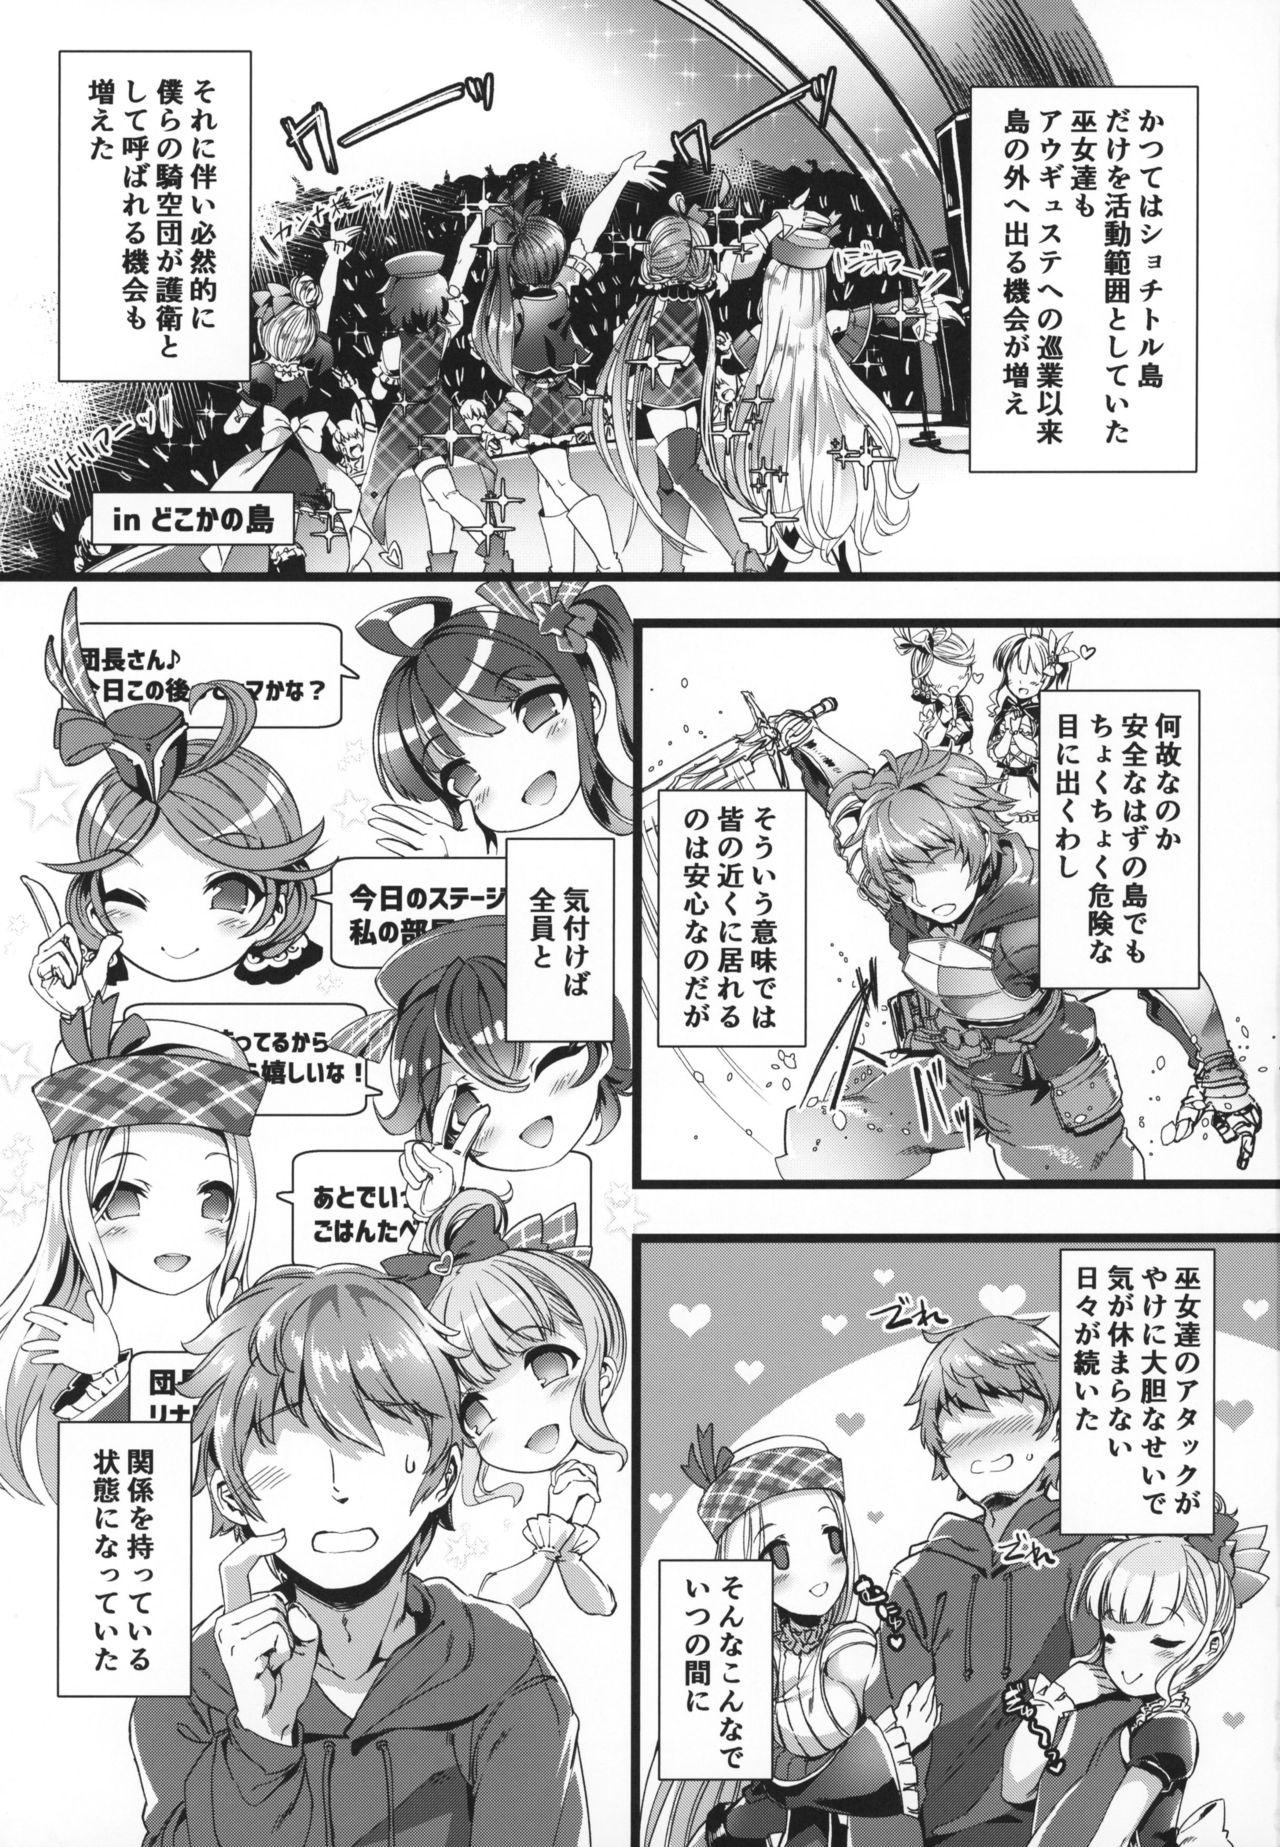 Sextape Se-no Aishiteru! - Granblue fantasy Creamy - Page 2